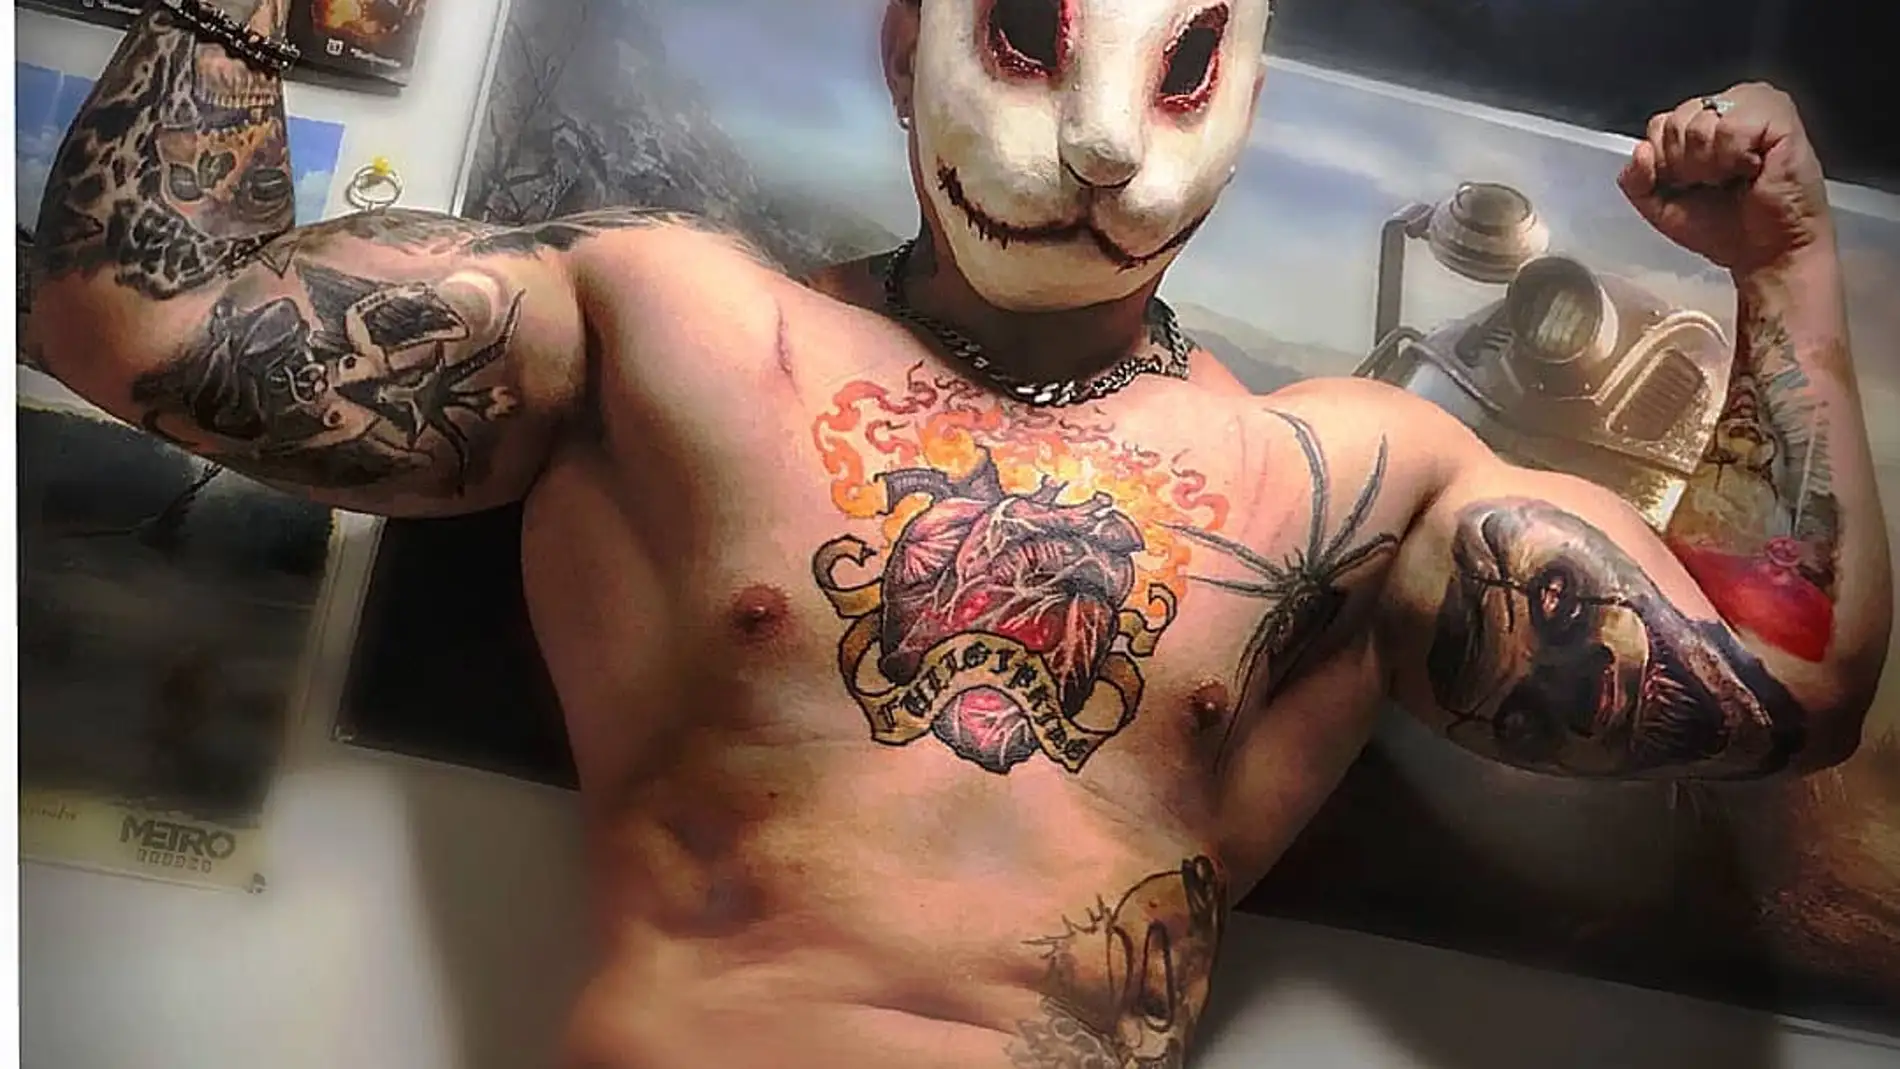 Los tatuajes de los que alardeaba Leandro en sus redes sociales muestran payasos asesinos, arañas y un corazón de fuego en el pecho